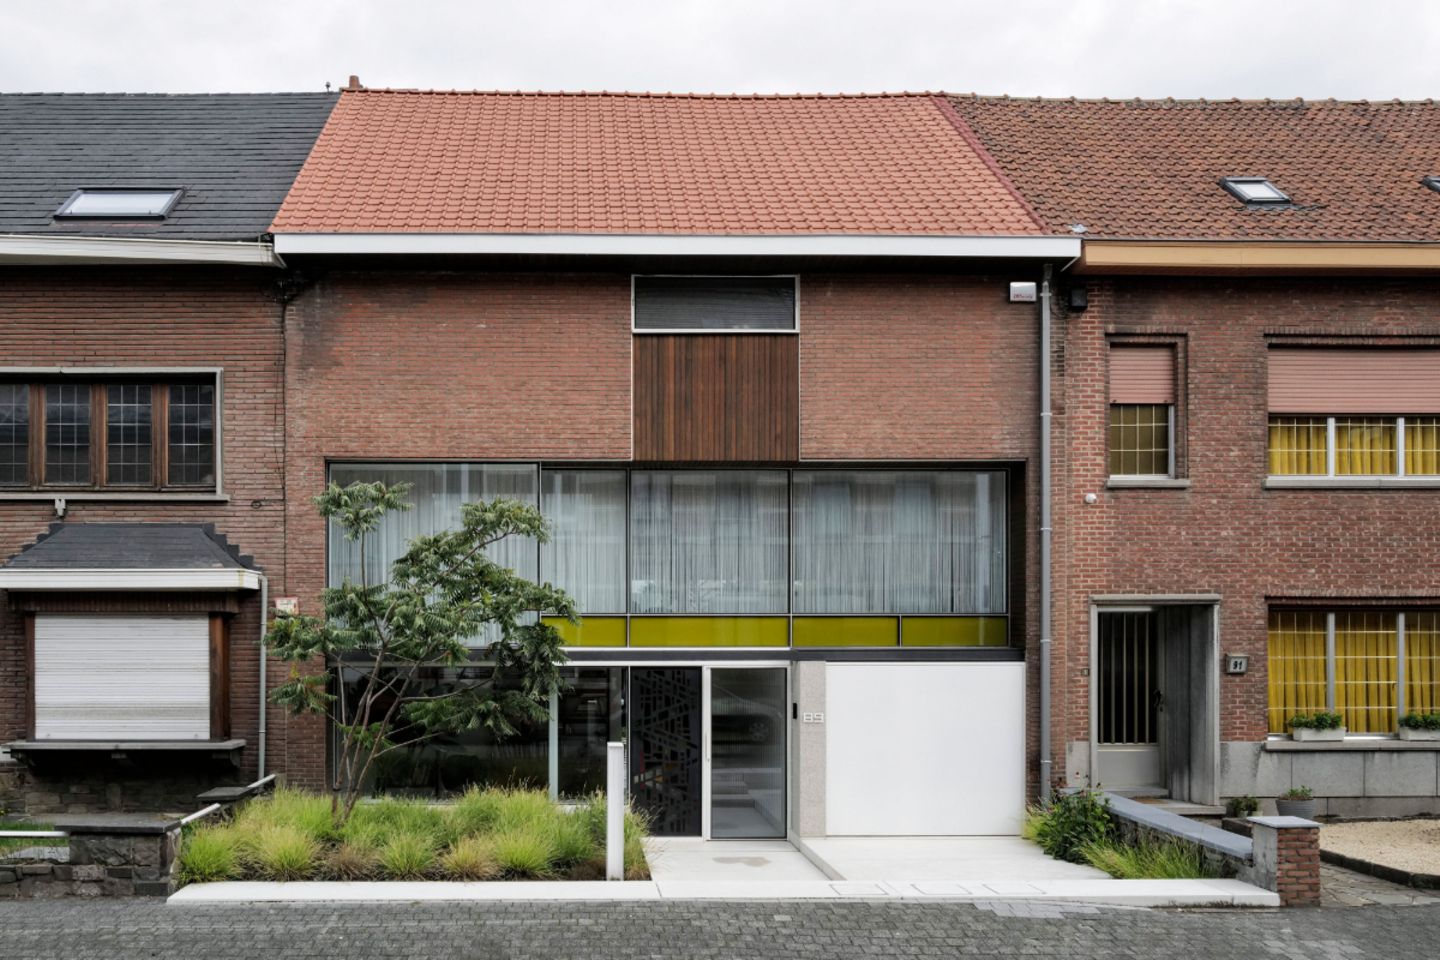 Dreigeschossige Hausfassade mit farbigen Glaspaneelen